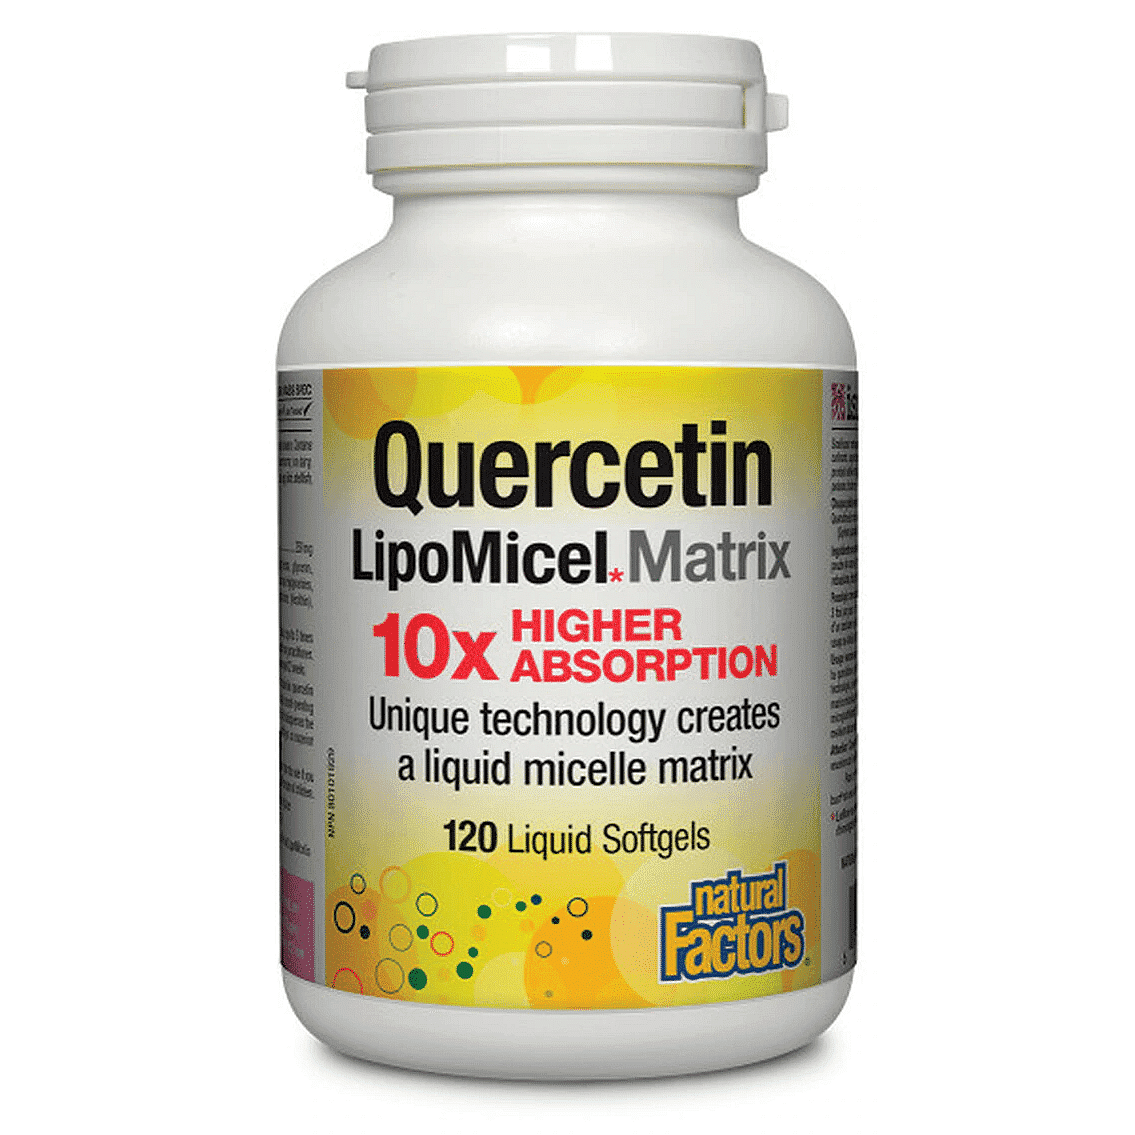 Natural Factors Quercetin LipoMicel Matrix 120 caos